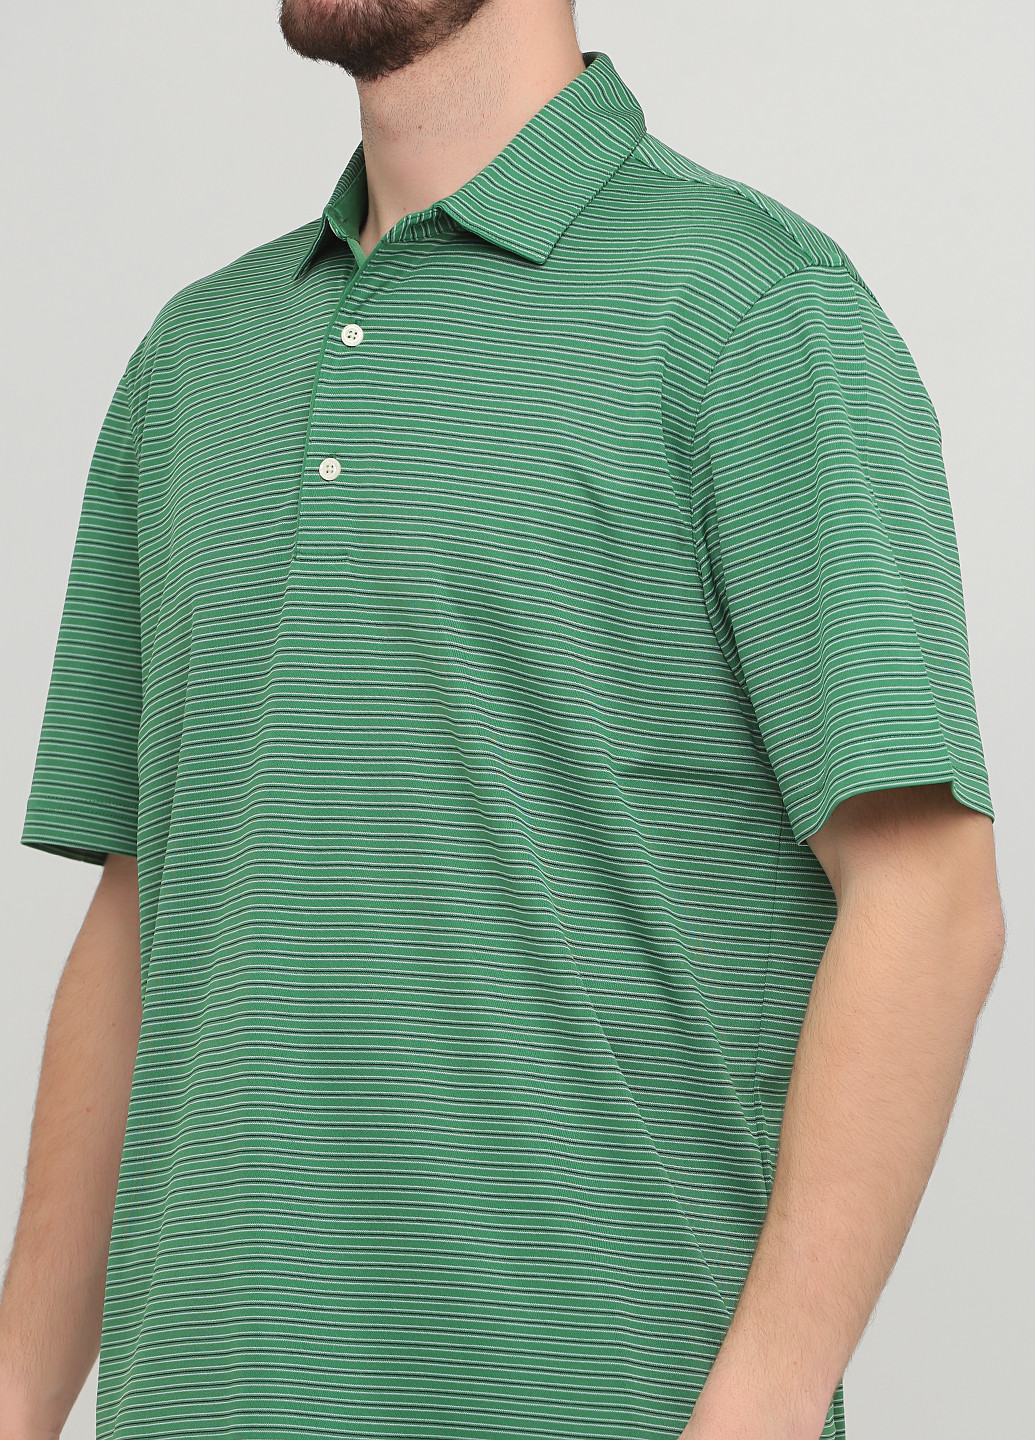 Зеленая футболка-поло для мужчин Greg Norman в полоску